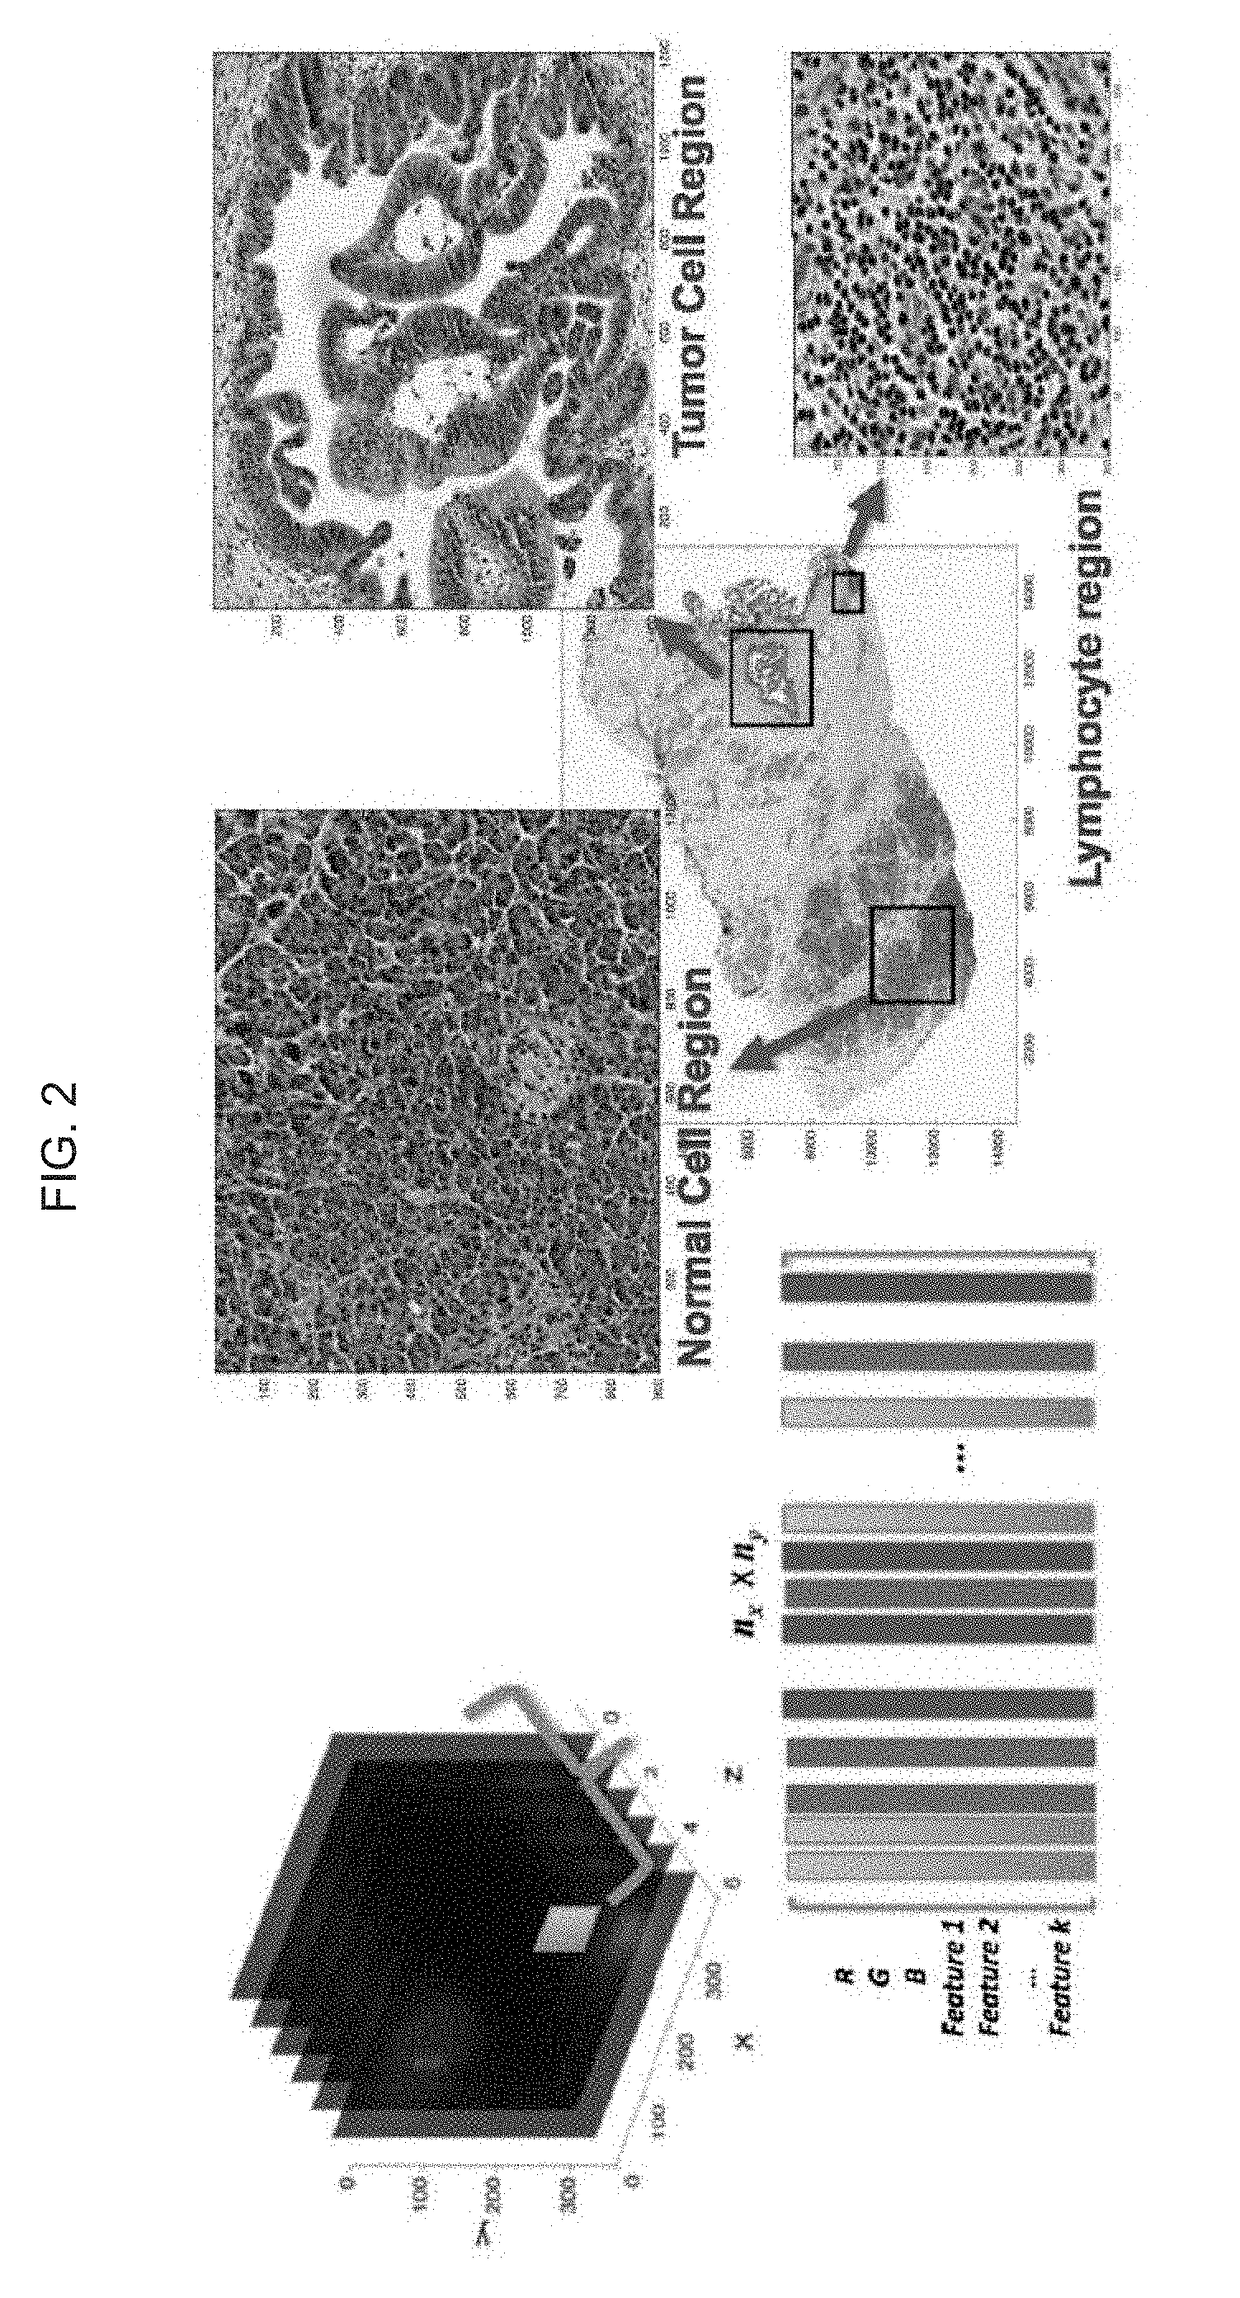 Automatic  nuclei segmentation in histopathology images